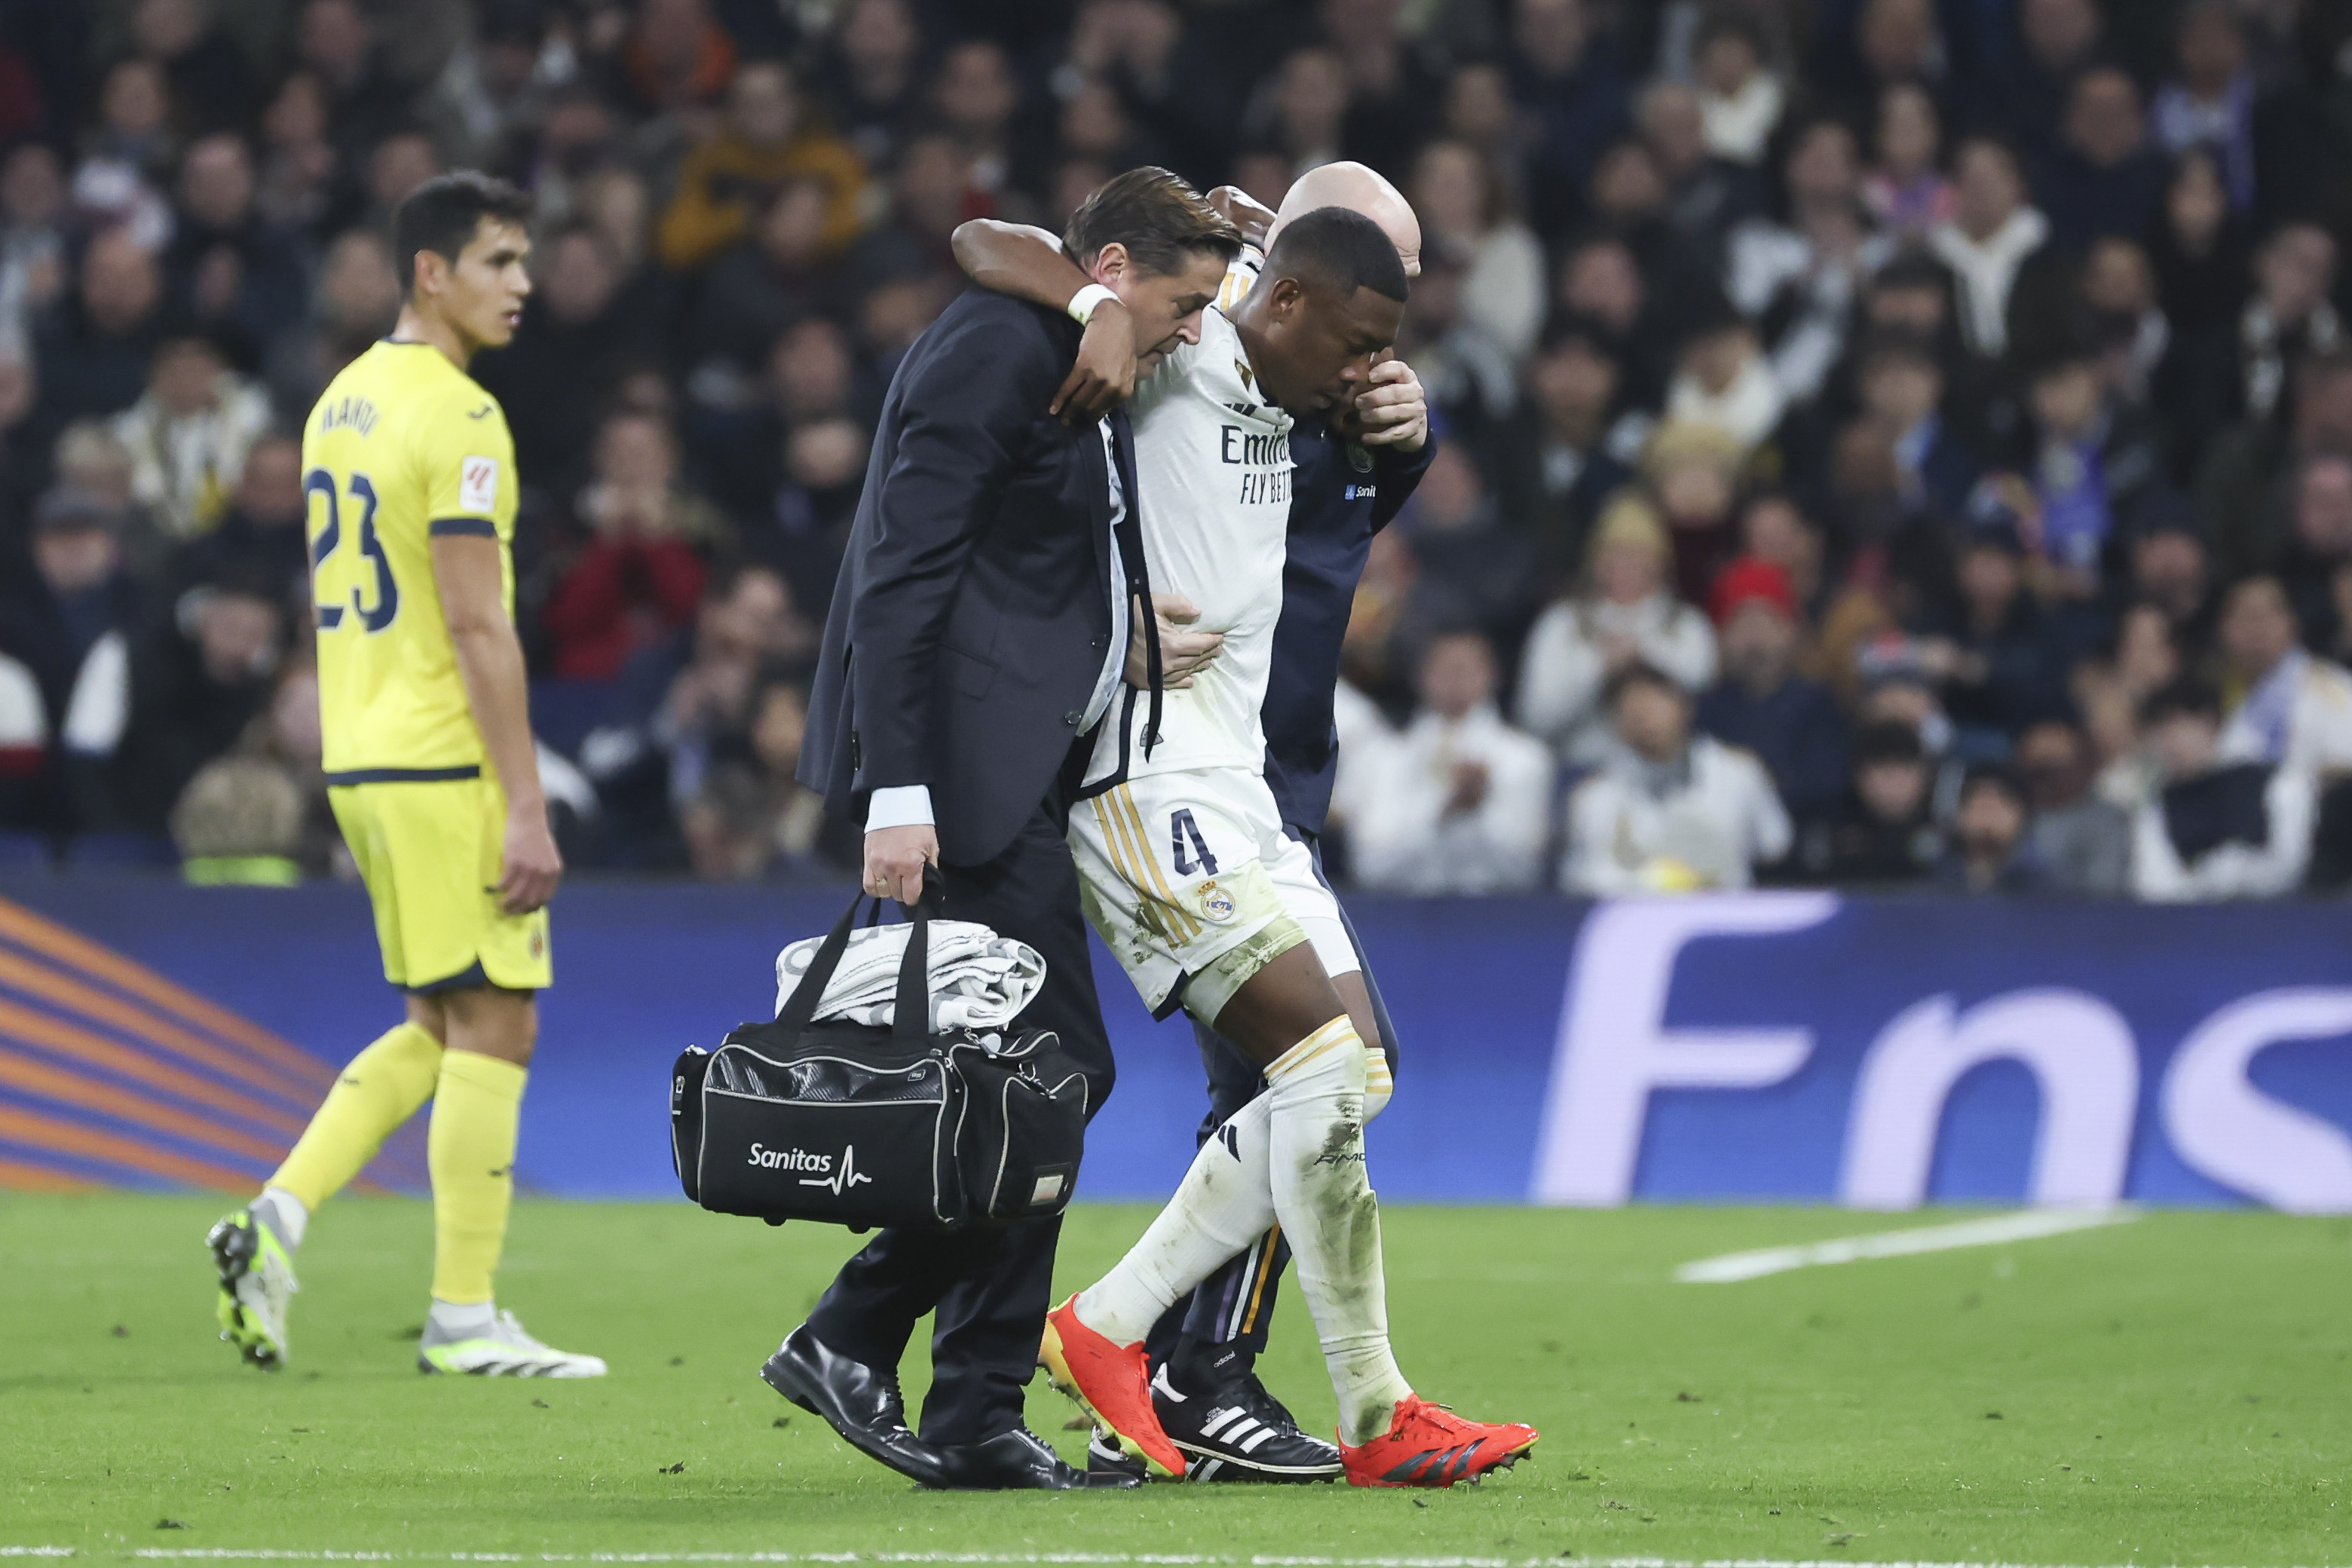 El defensa austriaco del Real Madrid, David Alaba (d), se retira del partido tras sufrir una lesión durante el partido de la jornada 17 de Liga contra el Villarreal CF. (Foto Prensa Libre: EFE)